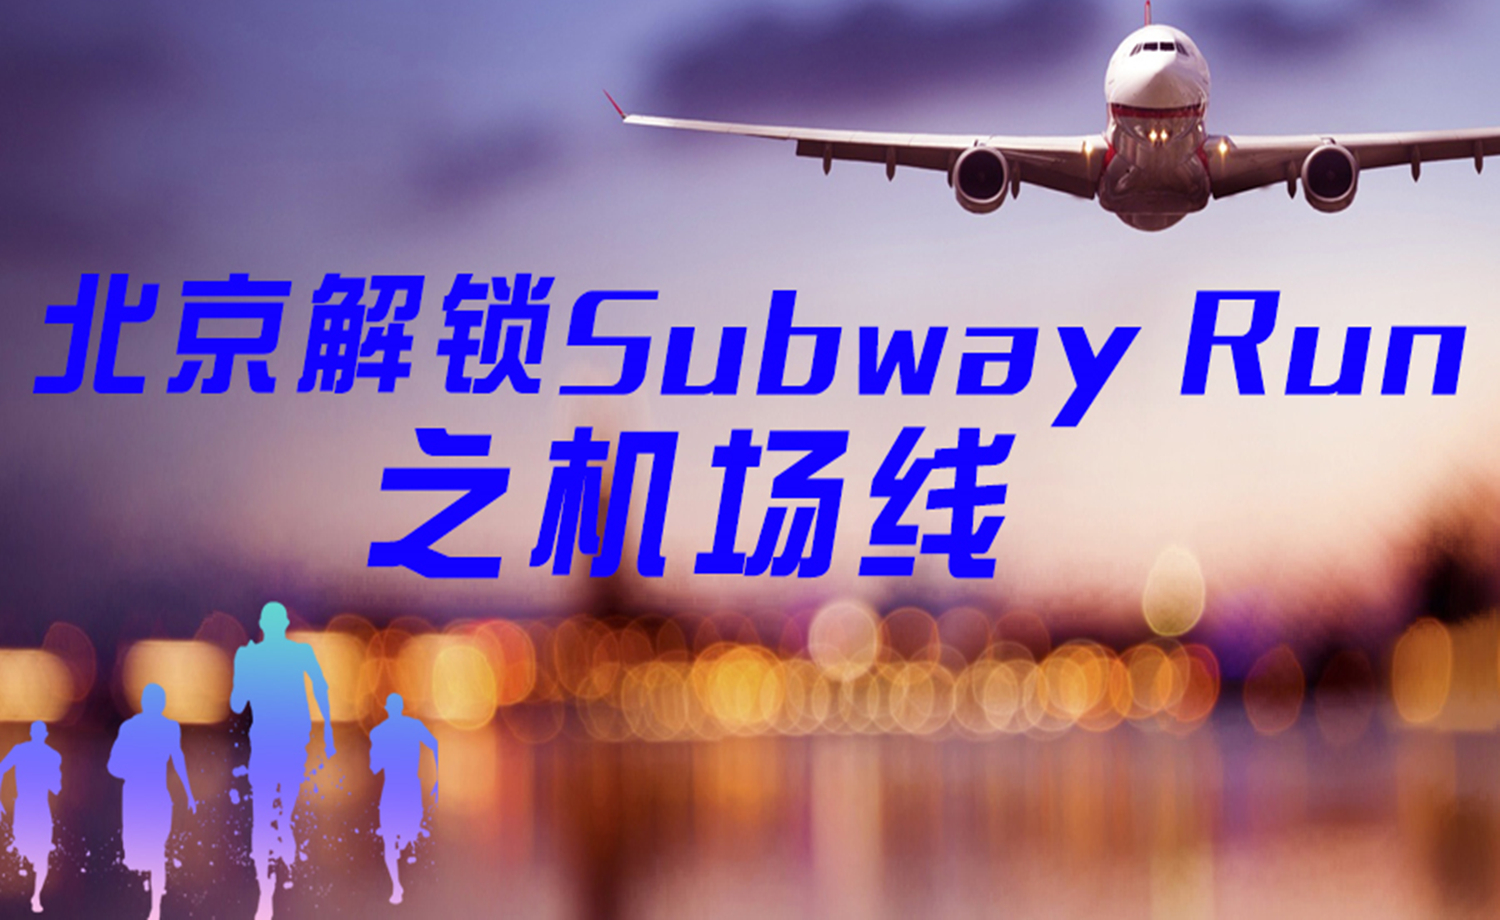 《北京解锁Subway Run》之机场线